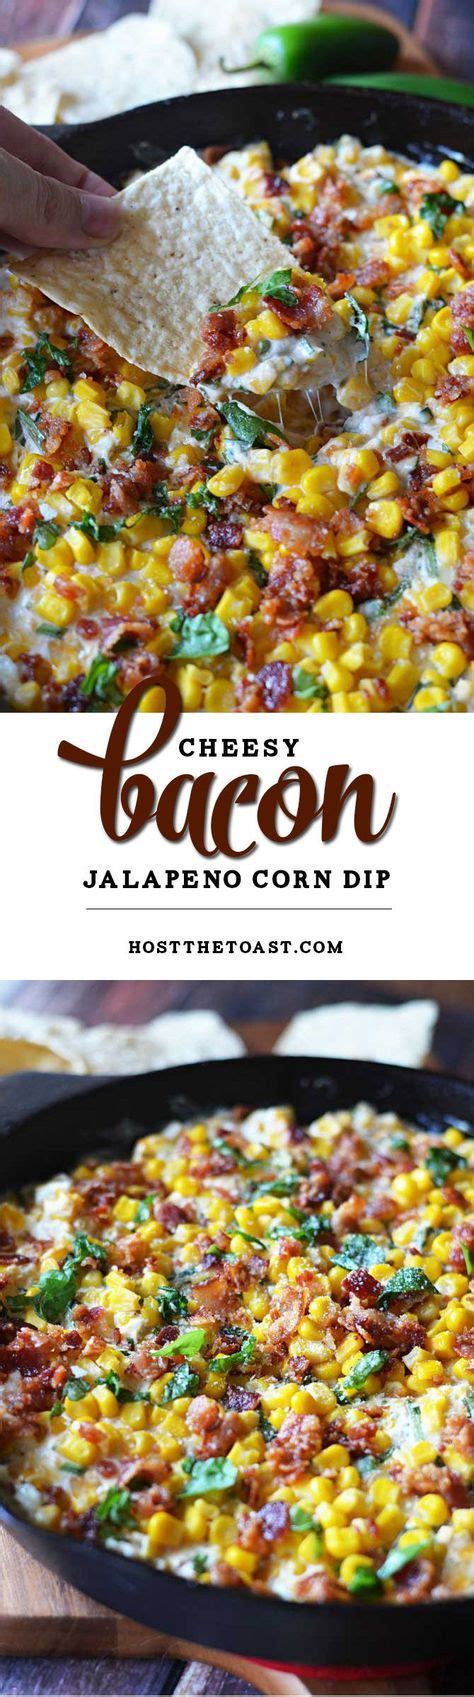 Cheesy Bacon Jalapeno Corn Dip Recipe Recipes Jalapeno Corn Dip